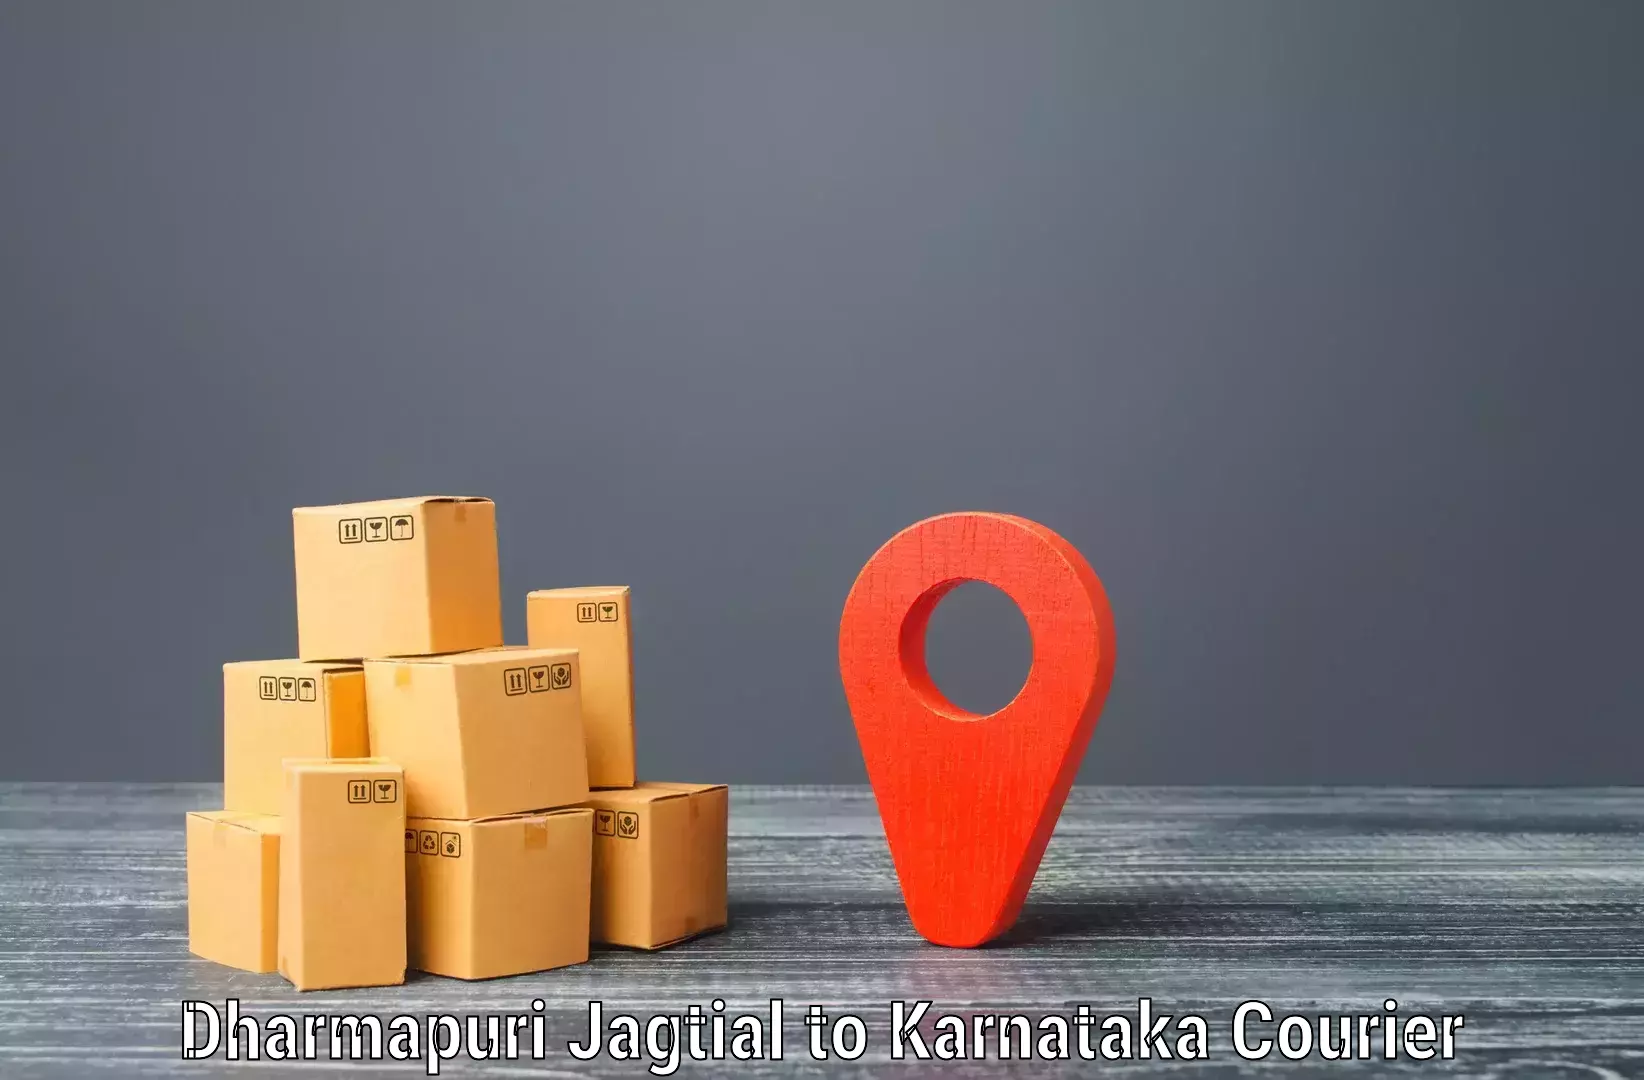 Individual parcel service Dharmapuri Jagtial to Harugeri